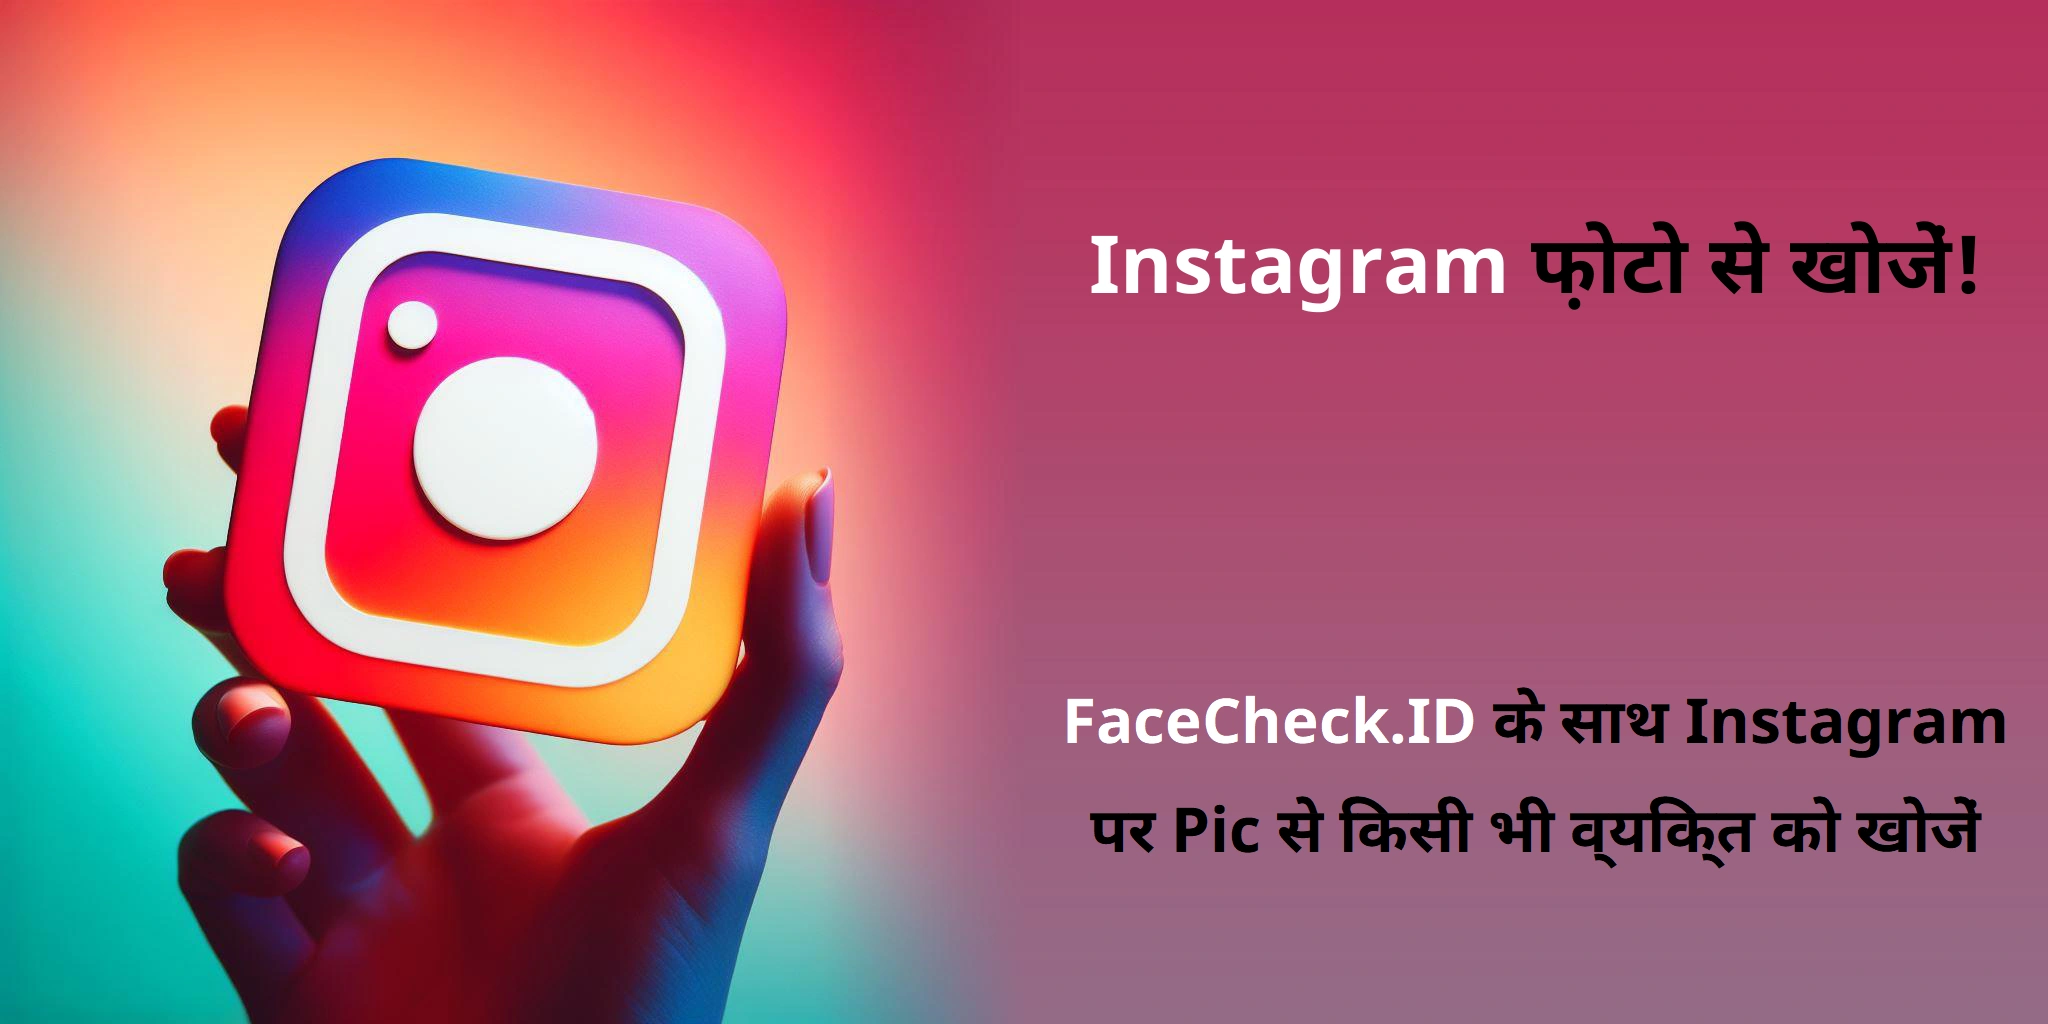 Instagram फ़ोटो से खोजें! FaceCheck.ID के साथ Instagram पर Pic से किसी भी व्यक्ति को खोजें